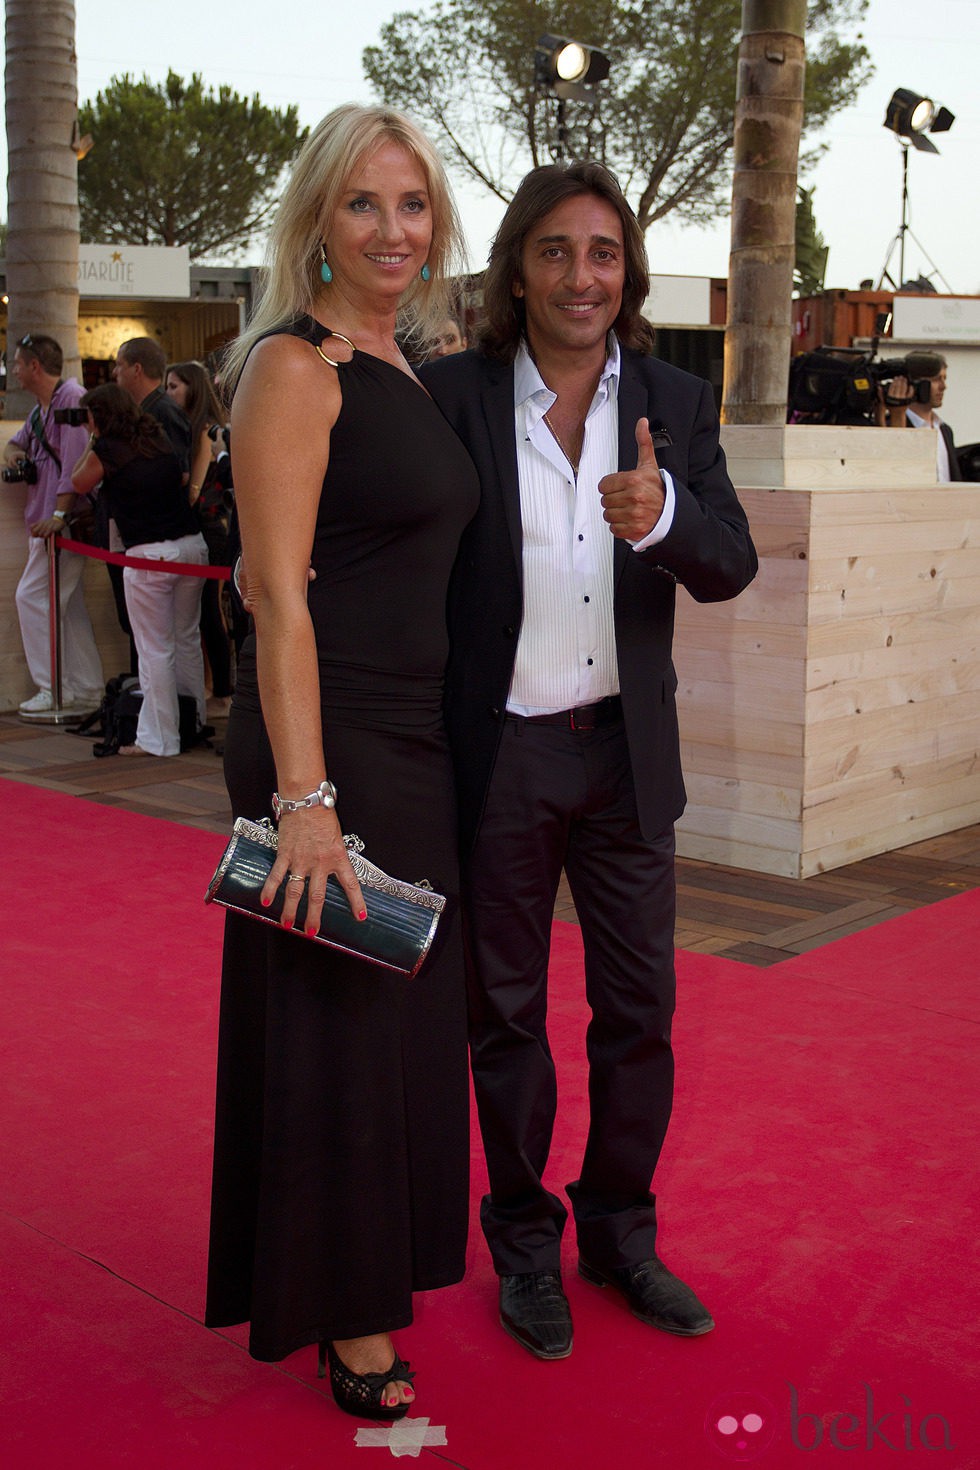 Antonio Carmona y Mariola Orellana en la gala Starlite 2012